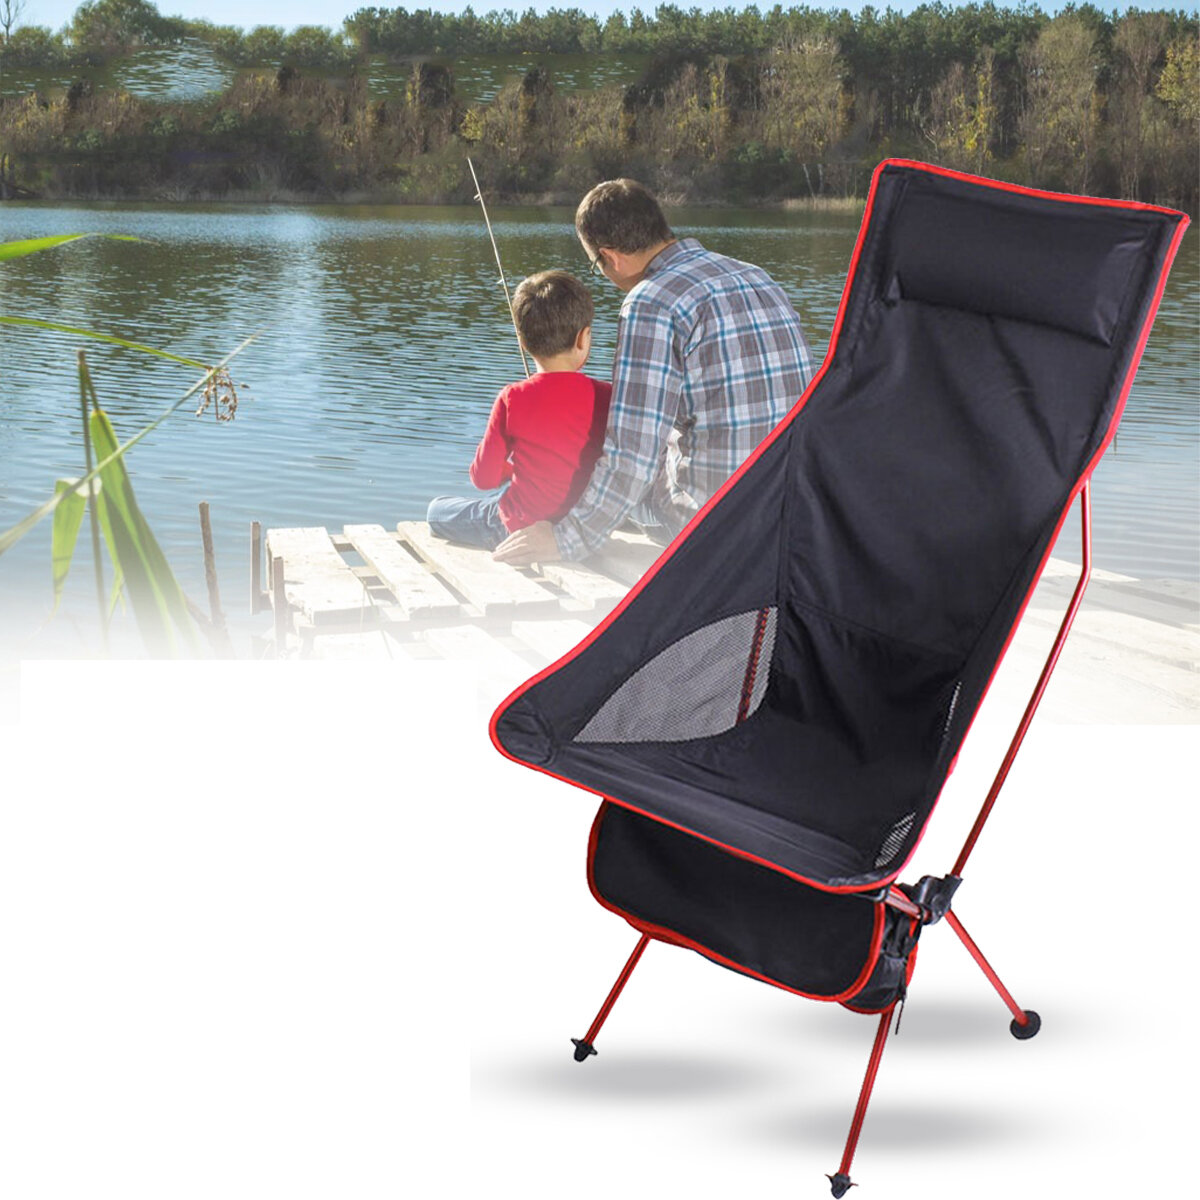 Cadeira dobrável leve e portátil de liga de alumínio para lazer ao ar livre, praia e viagens.